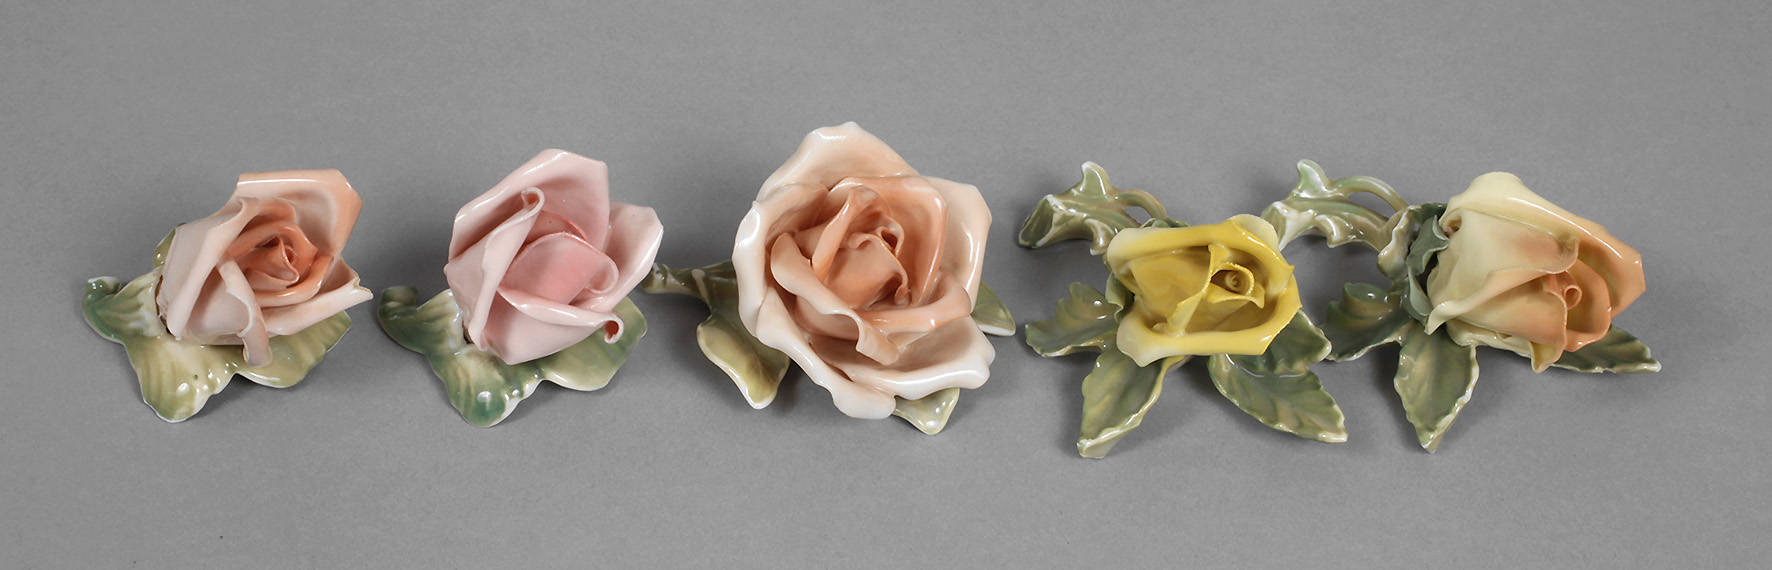 Ens Volkstedt fünf plastische Rosenblüten